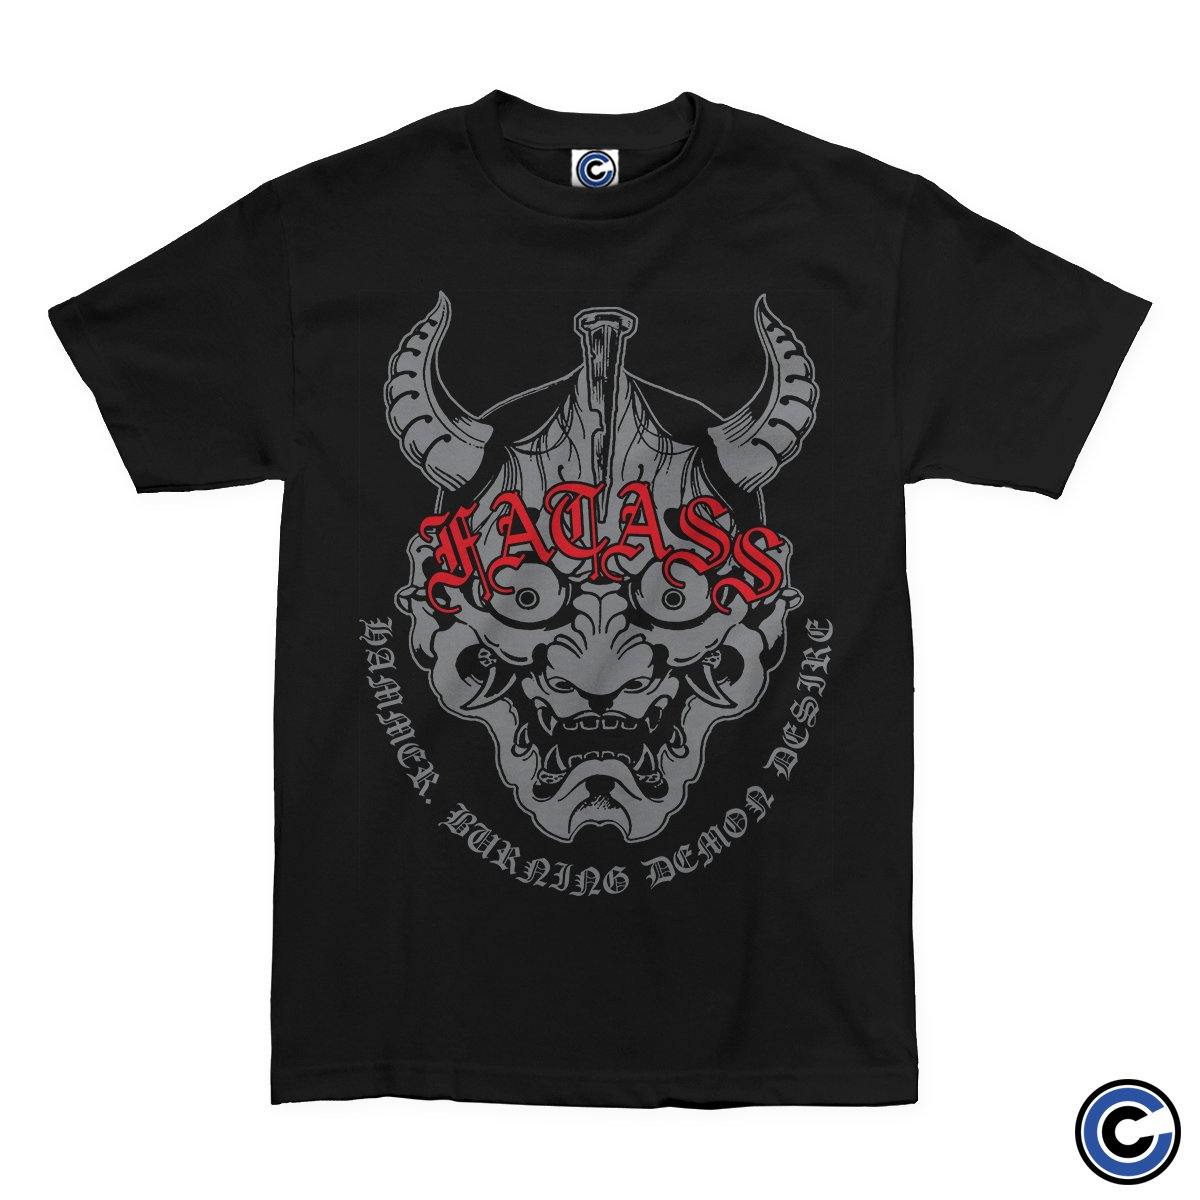 Buy – Fatass "Demon" Shirt – Band & Music Merch – Cold Cuts Merch